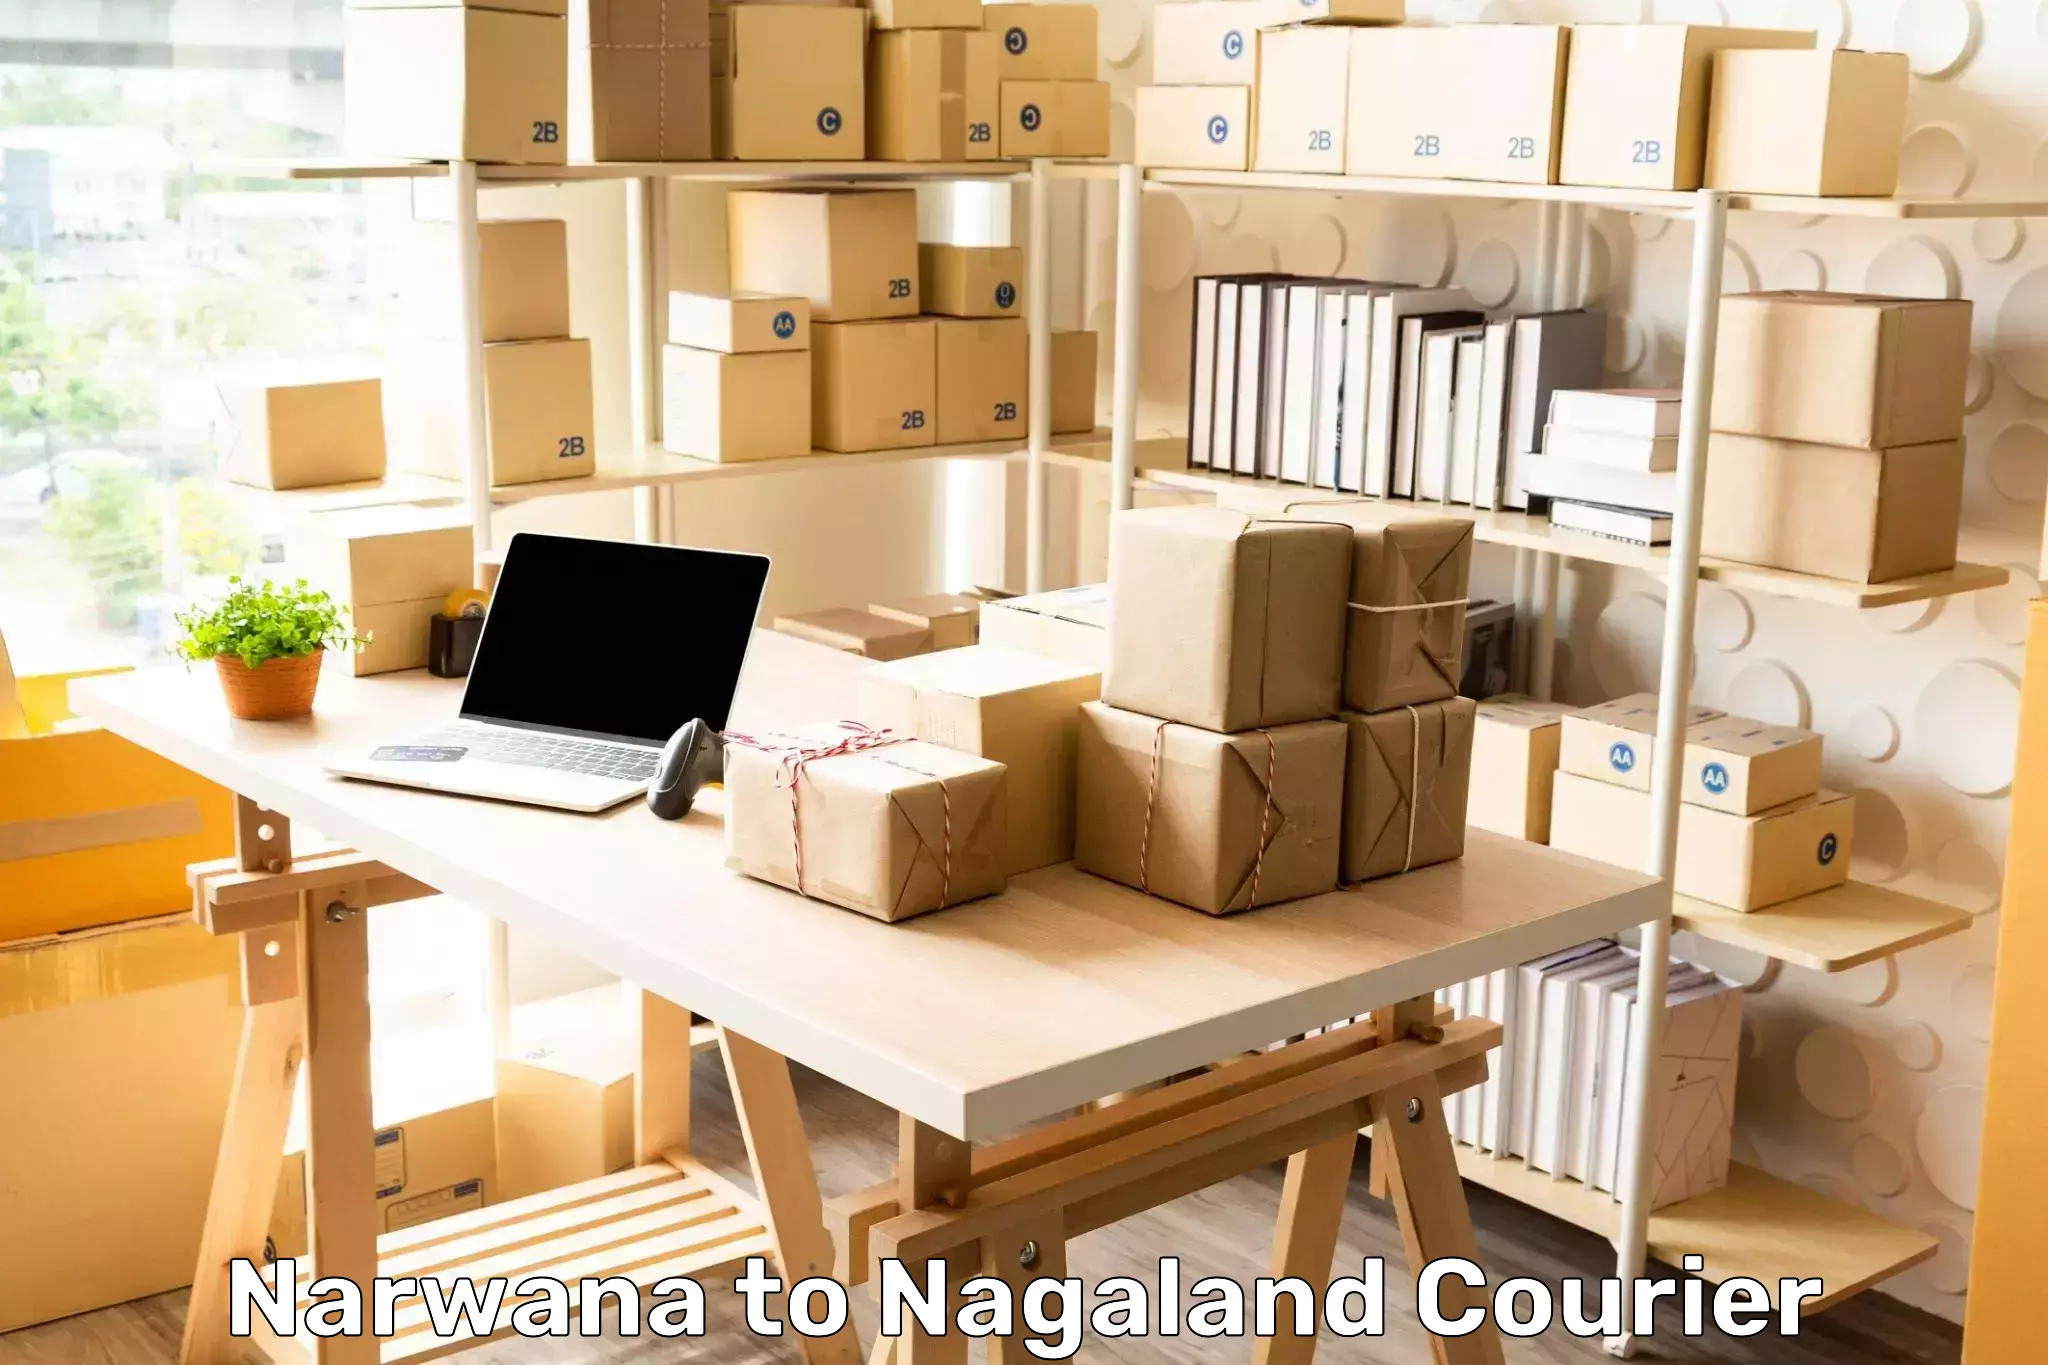 Express postal services Narwana to NIT Nagaland